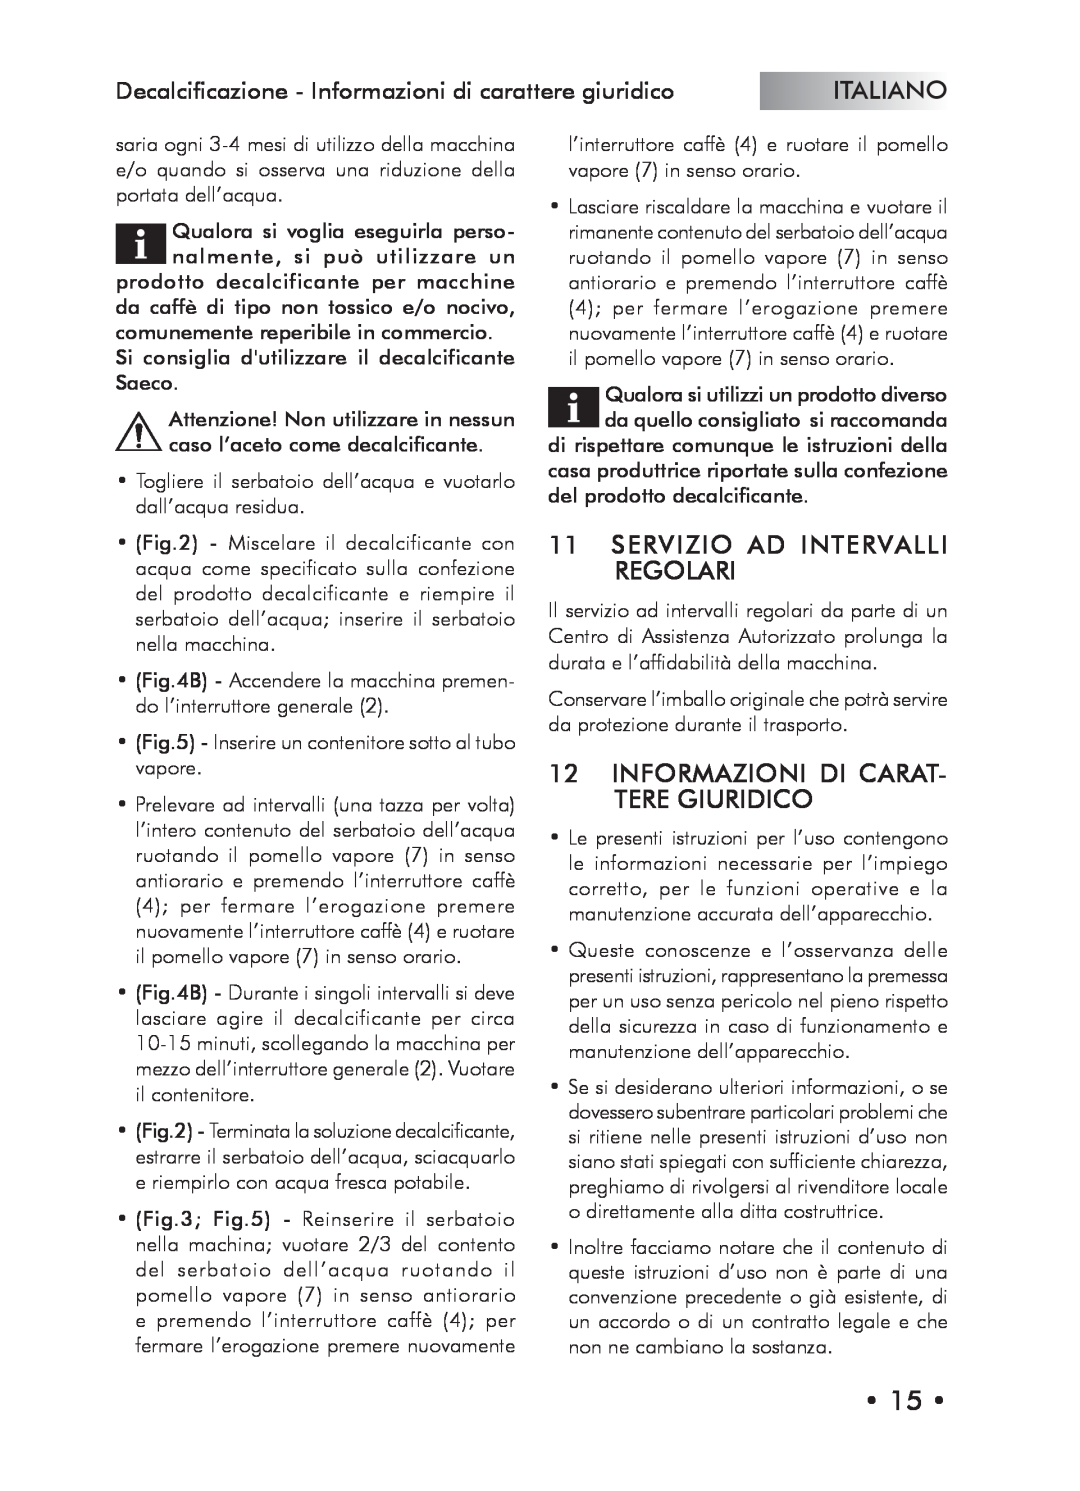 Saeco Coffee Makers Type SIN024X manual Servizio Ad Intervalli Regolari, Informazioni Di Carat- Tere Giuridico, Italiano 